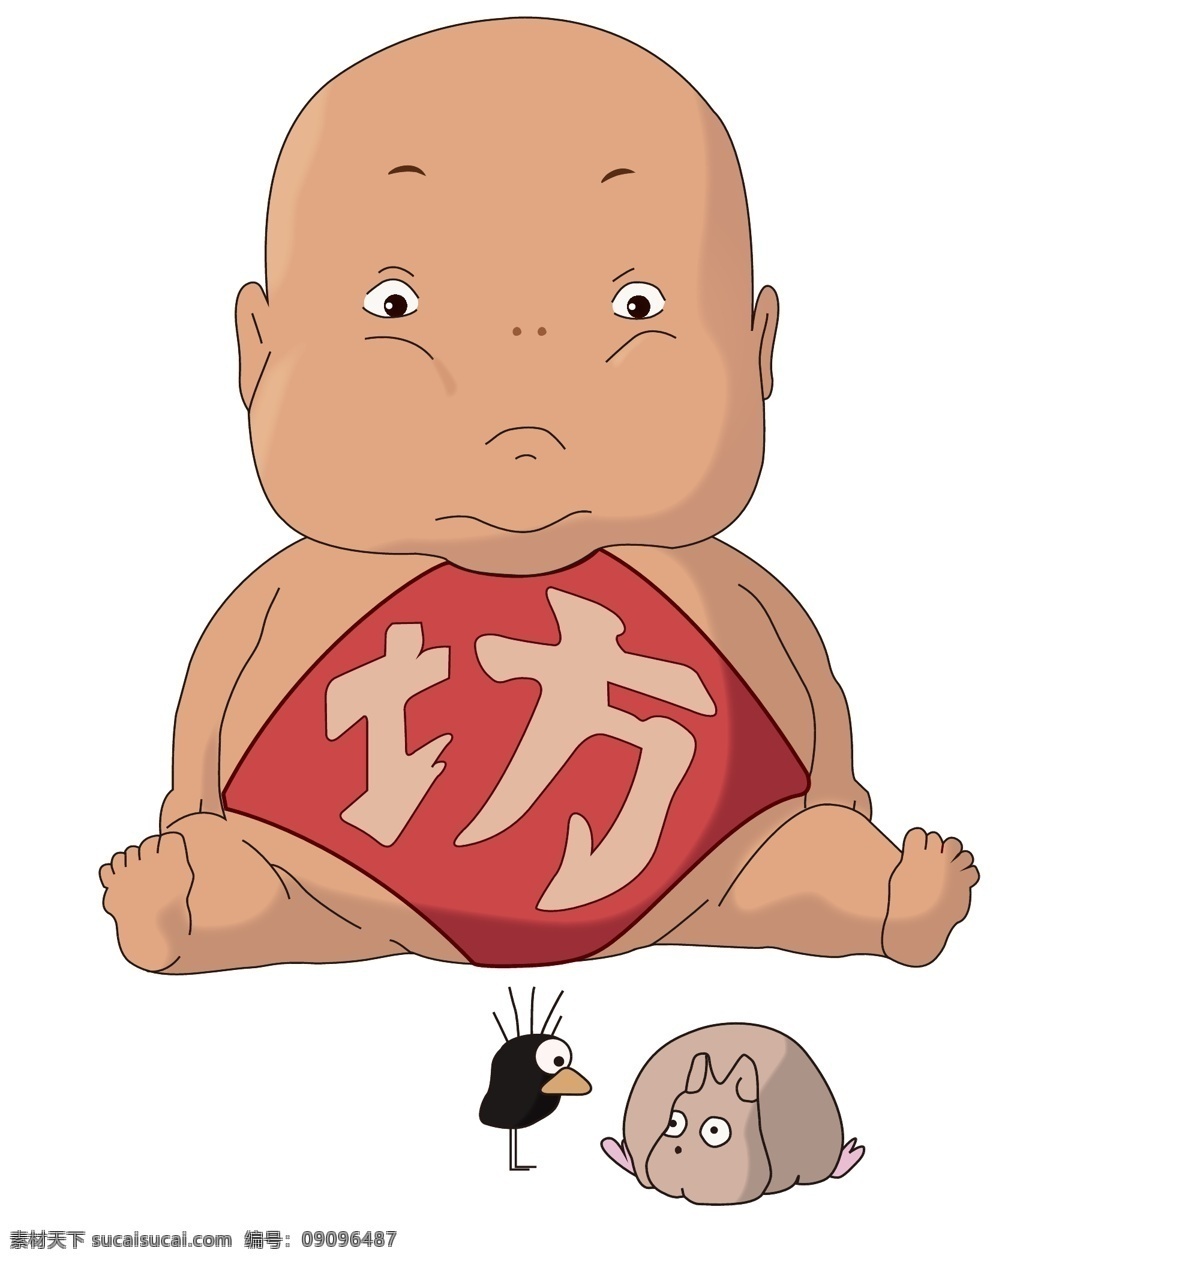 宫崎骏 动漫 千与千寻 宝宝 坊宝宝 卡通 乌鸦 老鼠 动漫动画 动漫人物